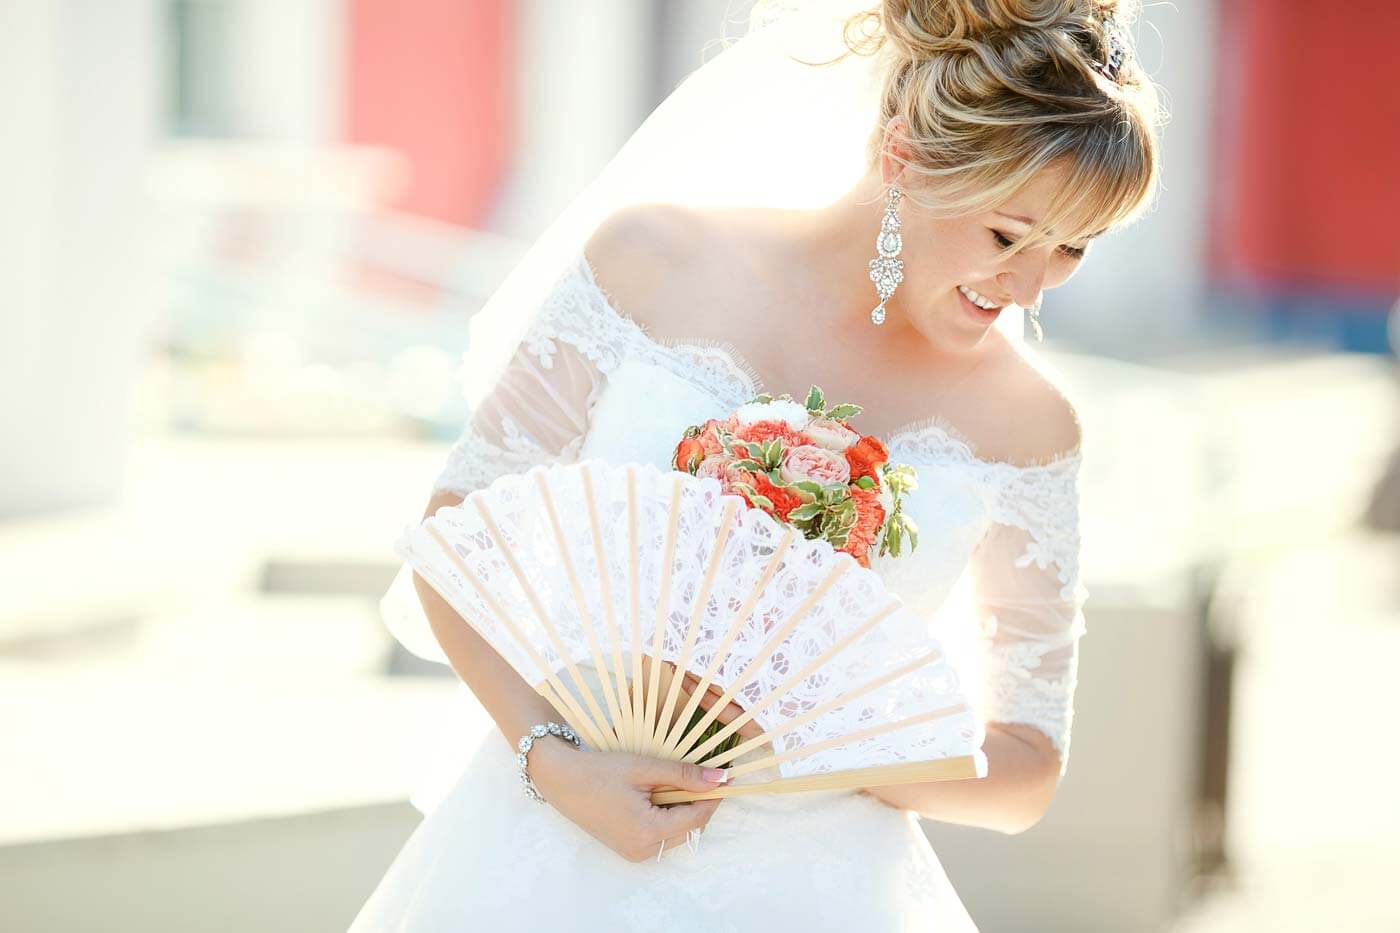 Braut Fächer weiss Hochzeit Gastgeschenk zum Brautkleid